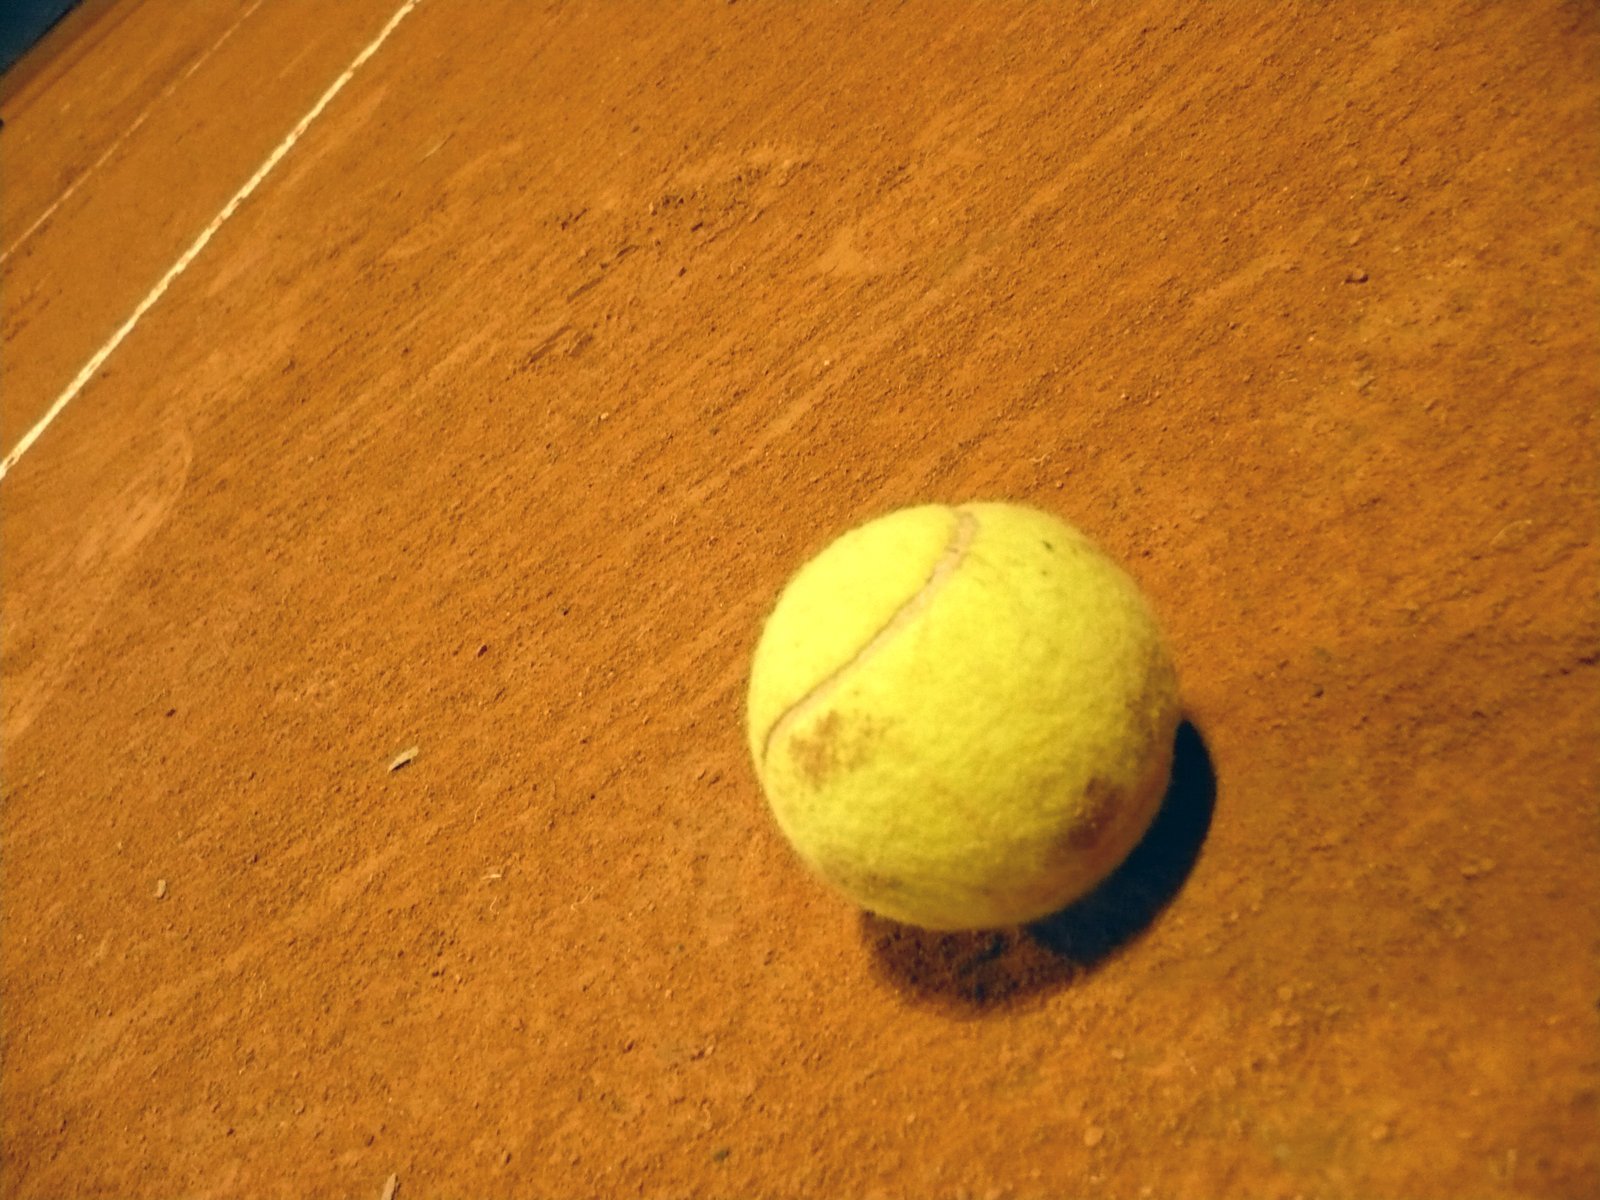 a close up of a tennis ball on a court